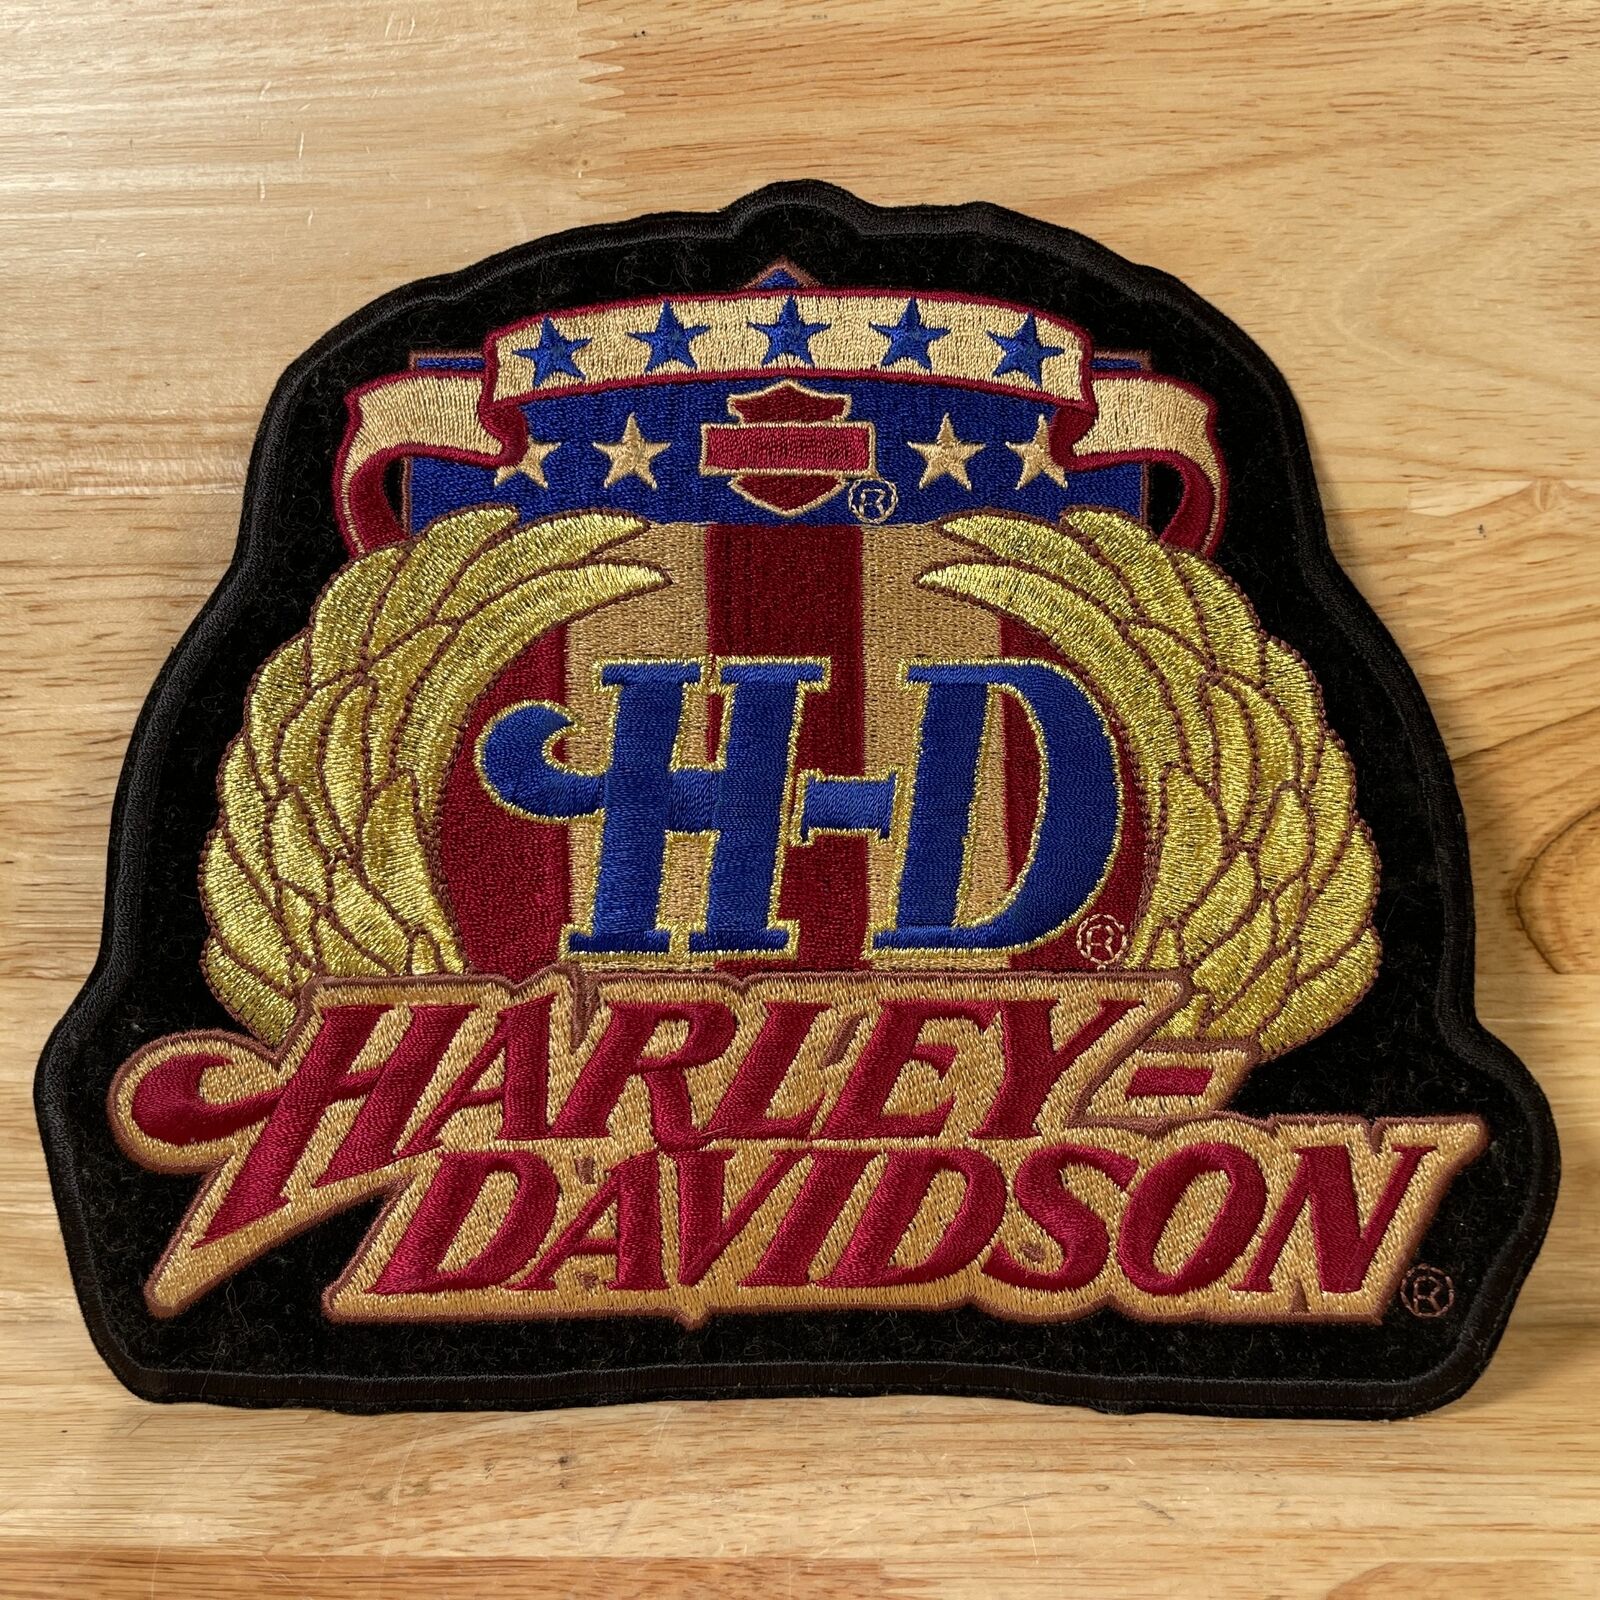 2005 Harley Davidson Motorcycle Black Embroidered Biker Emblem Patch - Large